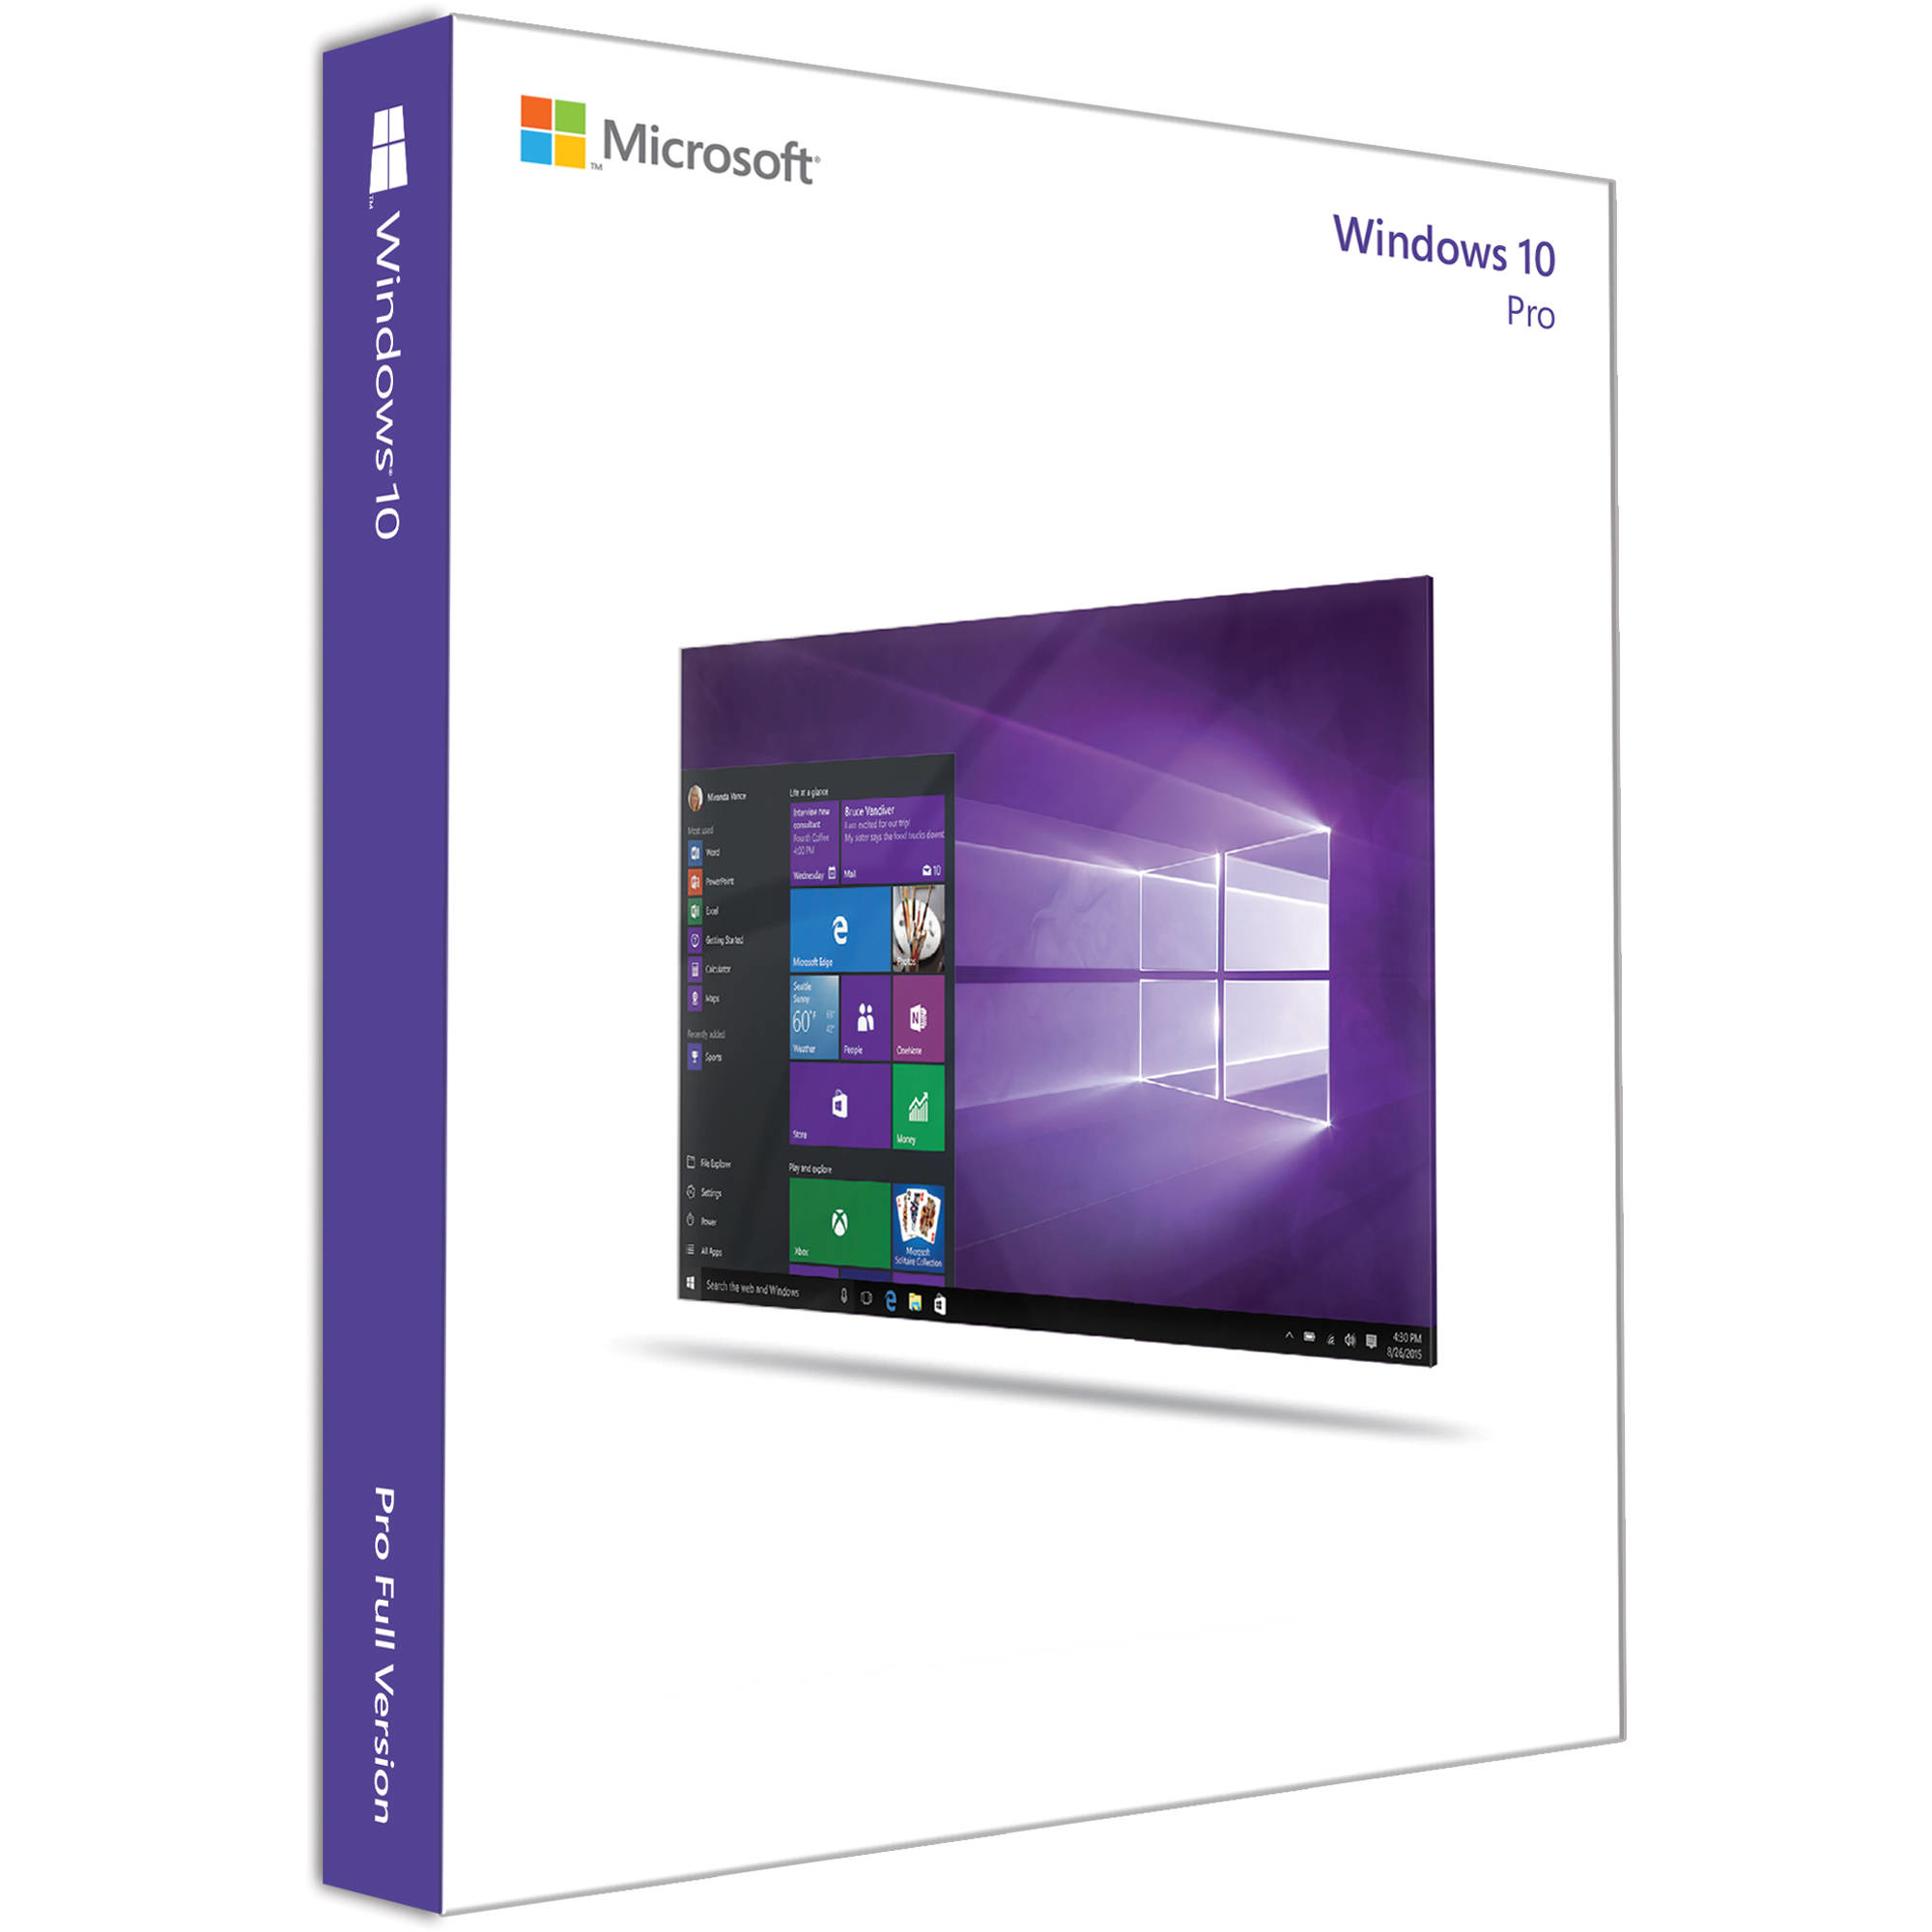 Buy Microsoft Windows 11 Pro DVD OEM in Tashkent 